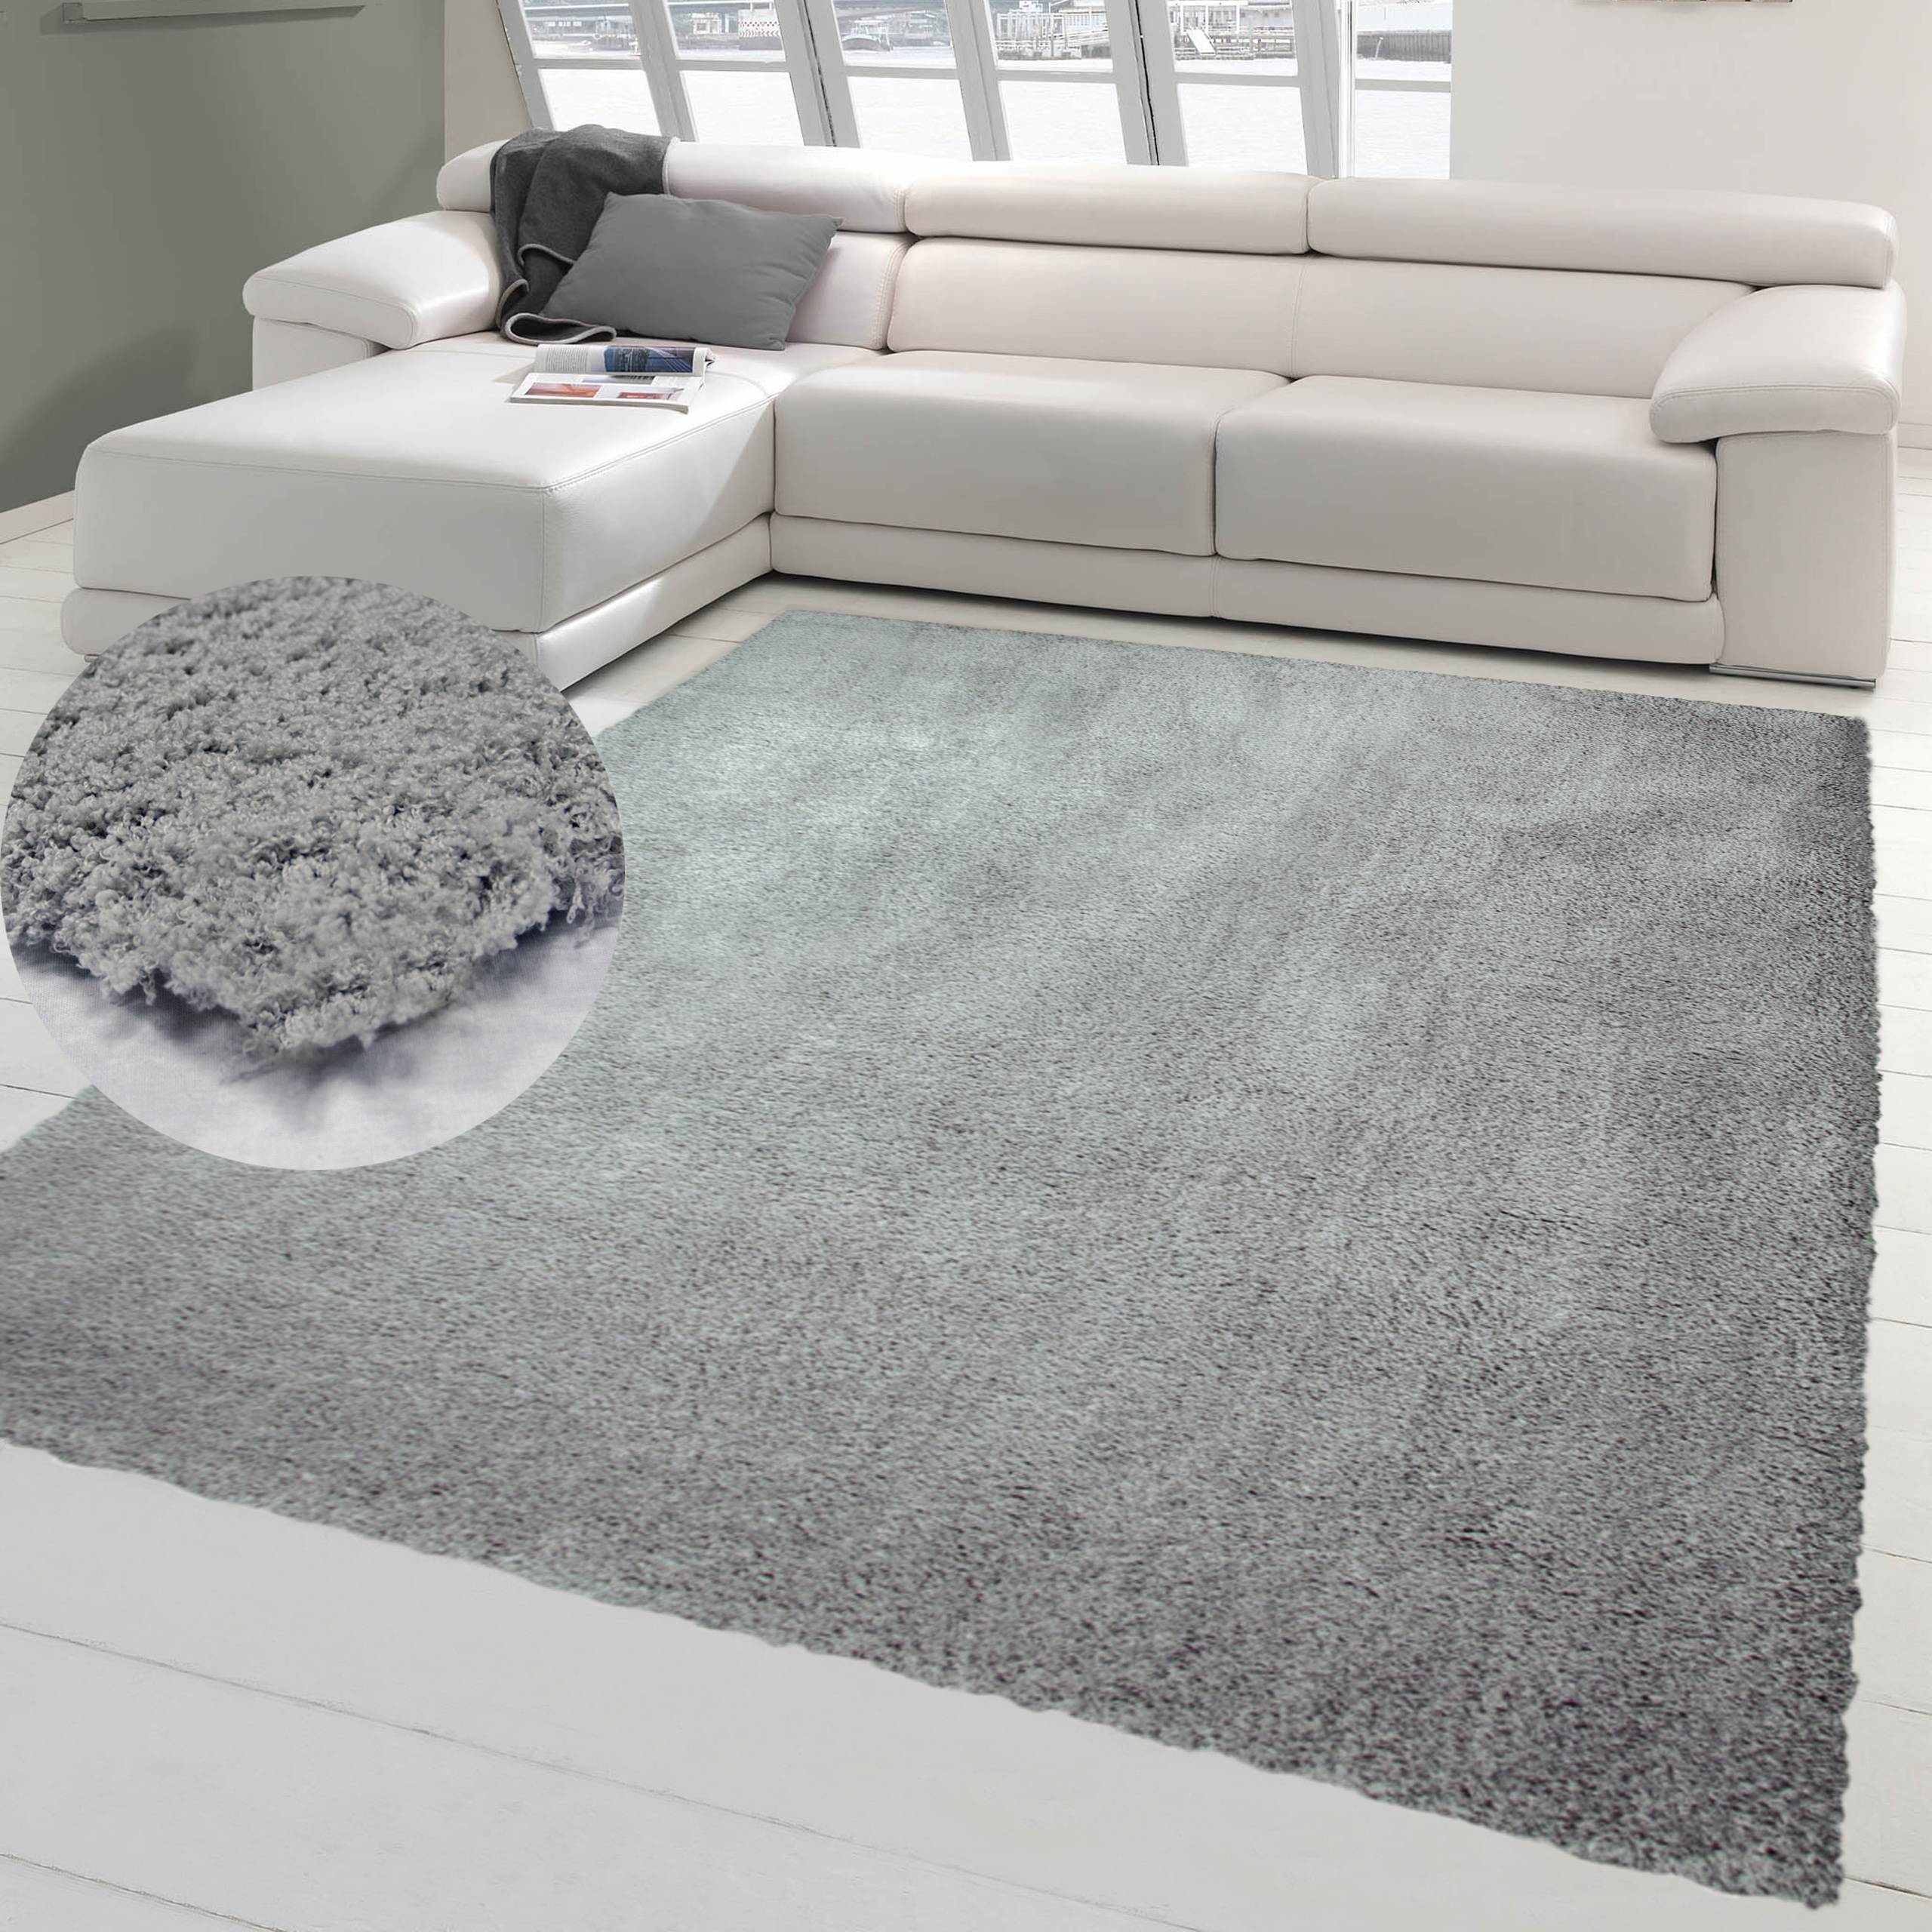 Shaggy Gute Teppich-Traum Preise & Hochflor-Teppiche kaufen: online | faire Qualität,